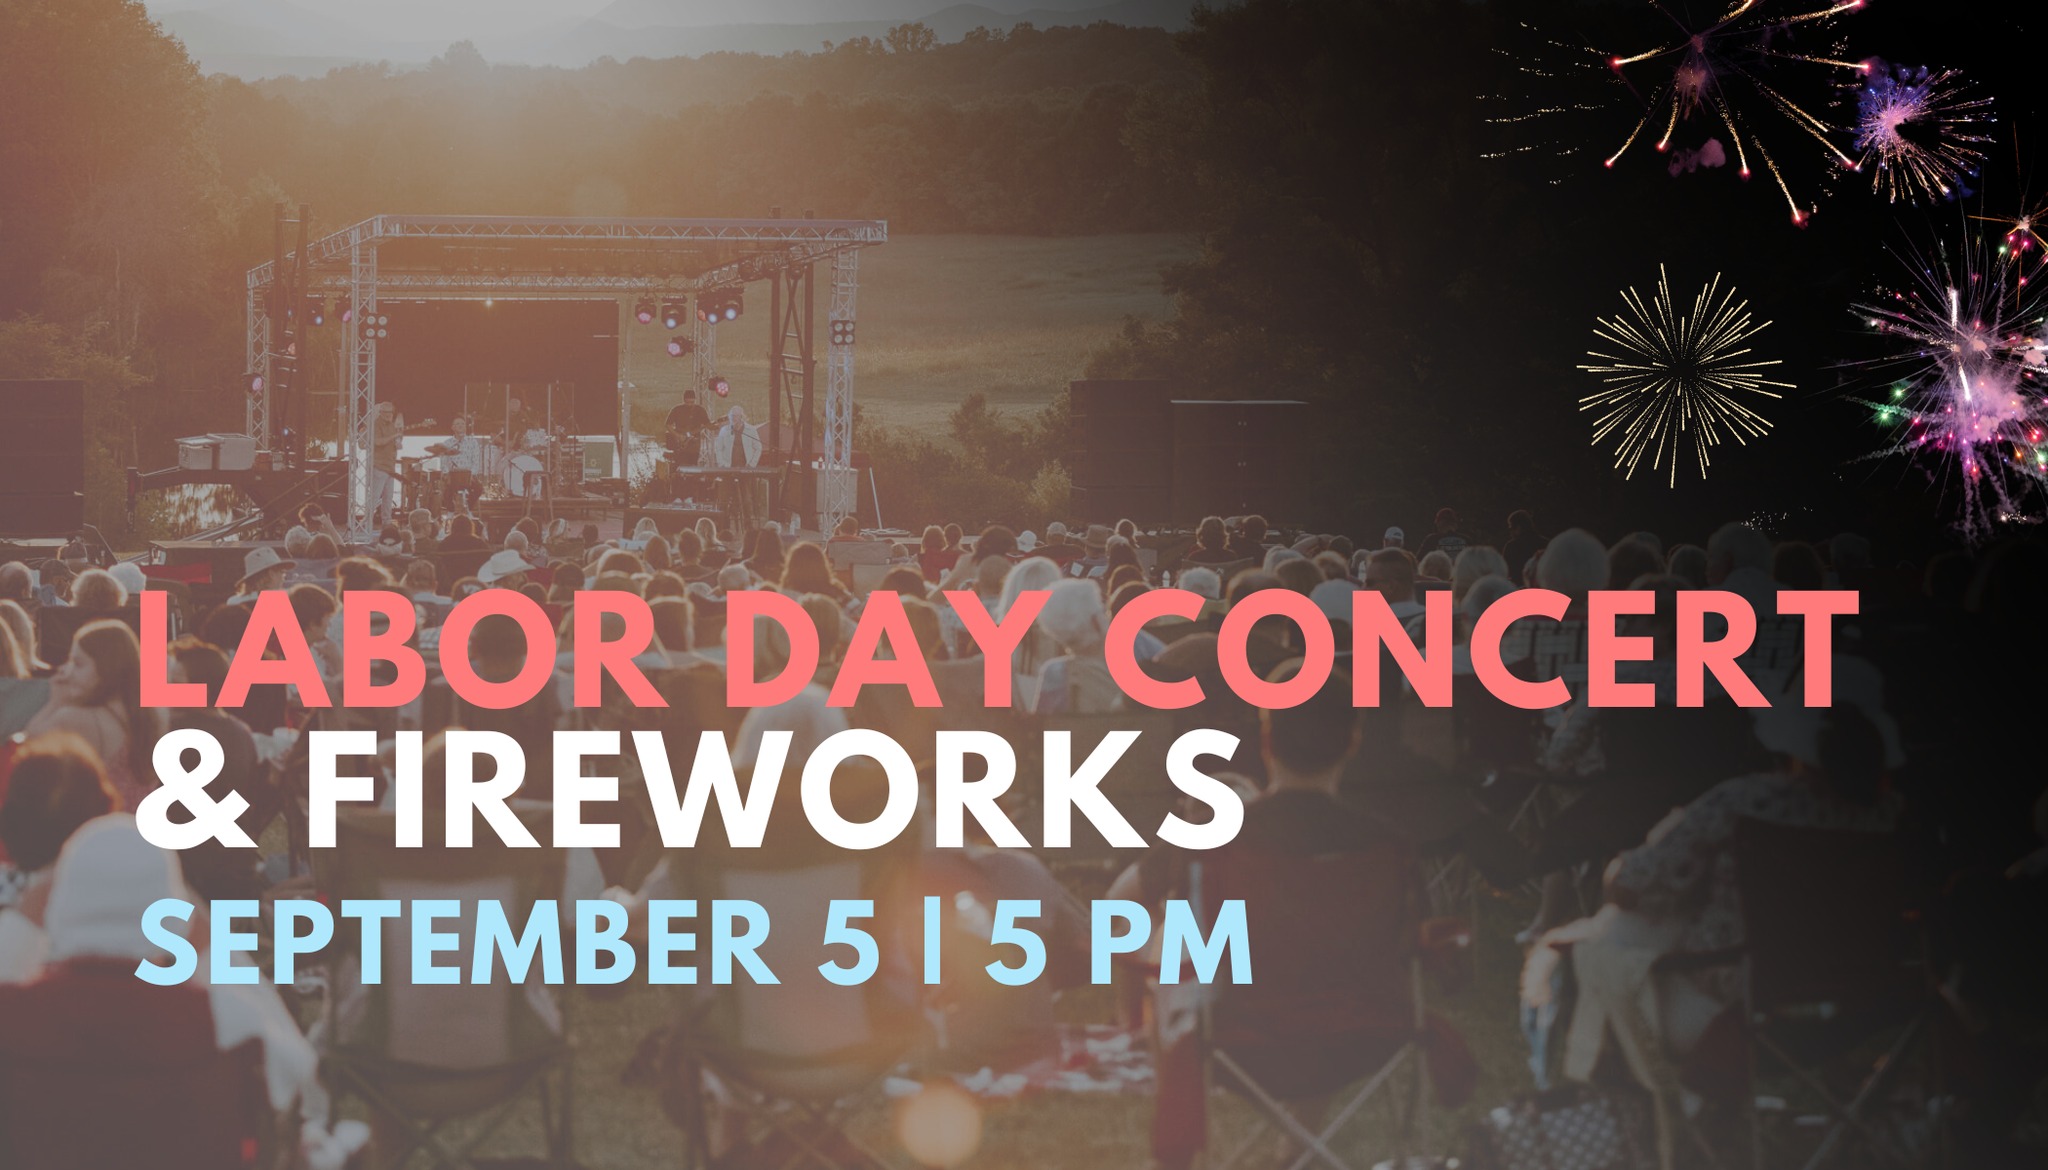 Labor Day Concert & Fireworks Destination Bedford